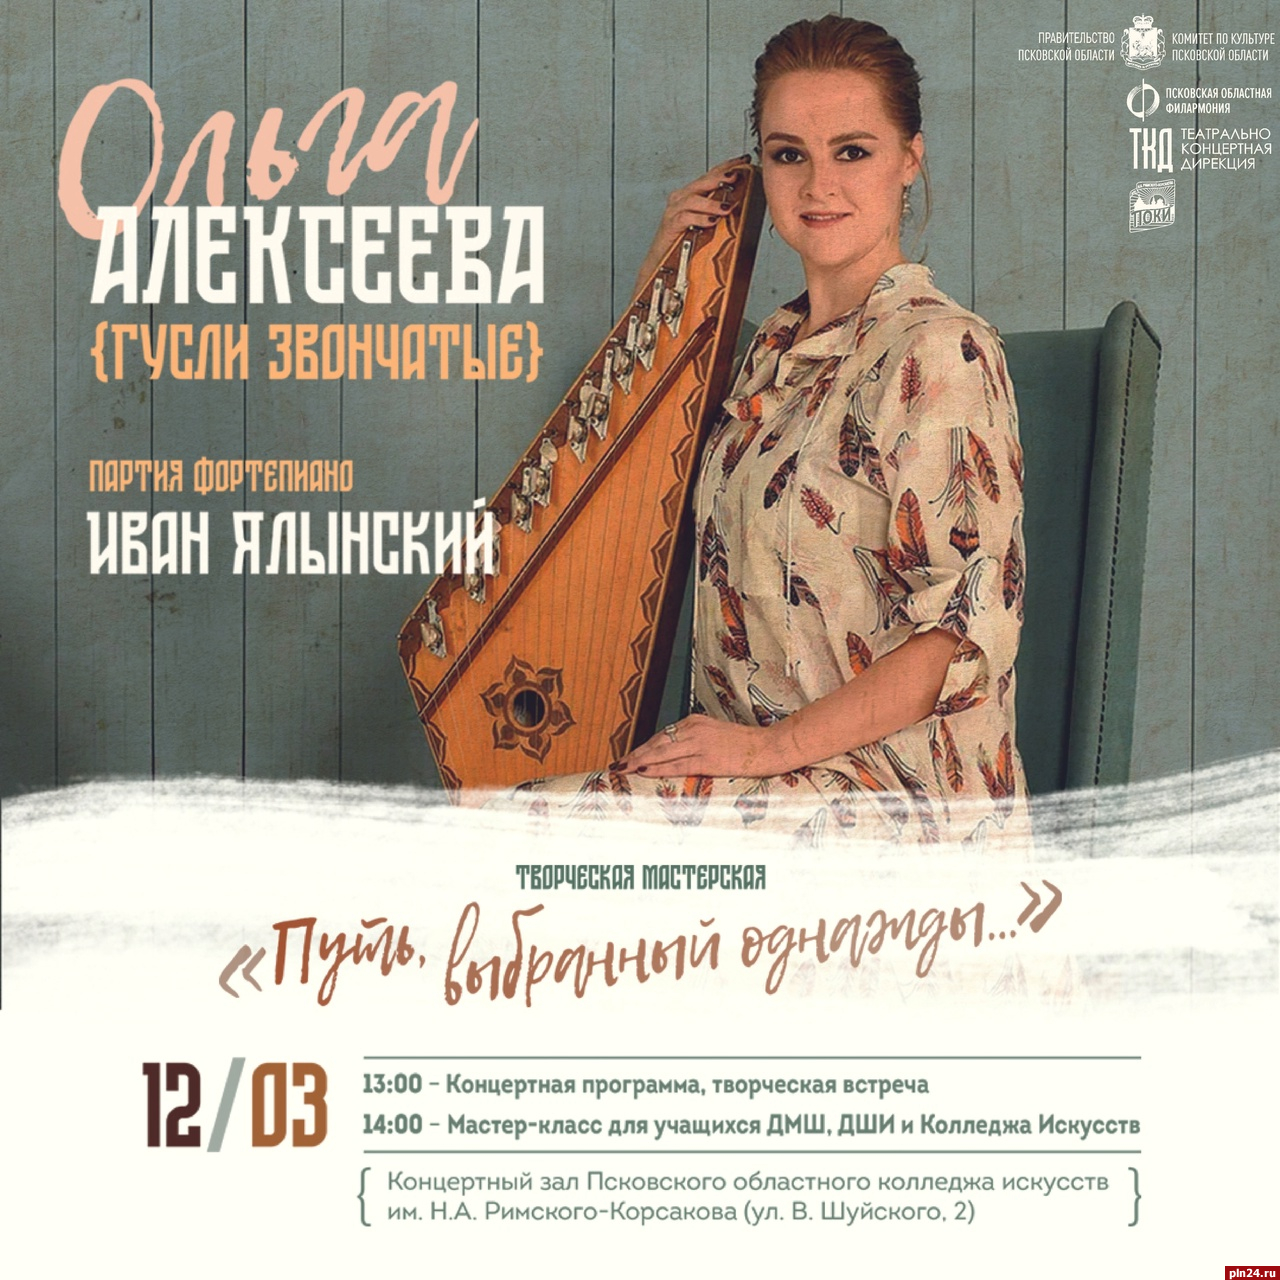 Мастер-класс по игре на гуслях и концерт Ольги Алексеевой пройдут в Пскове